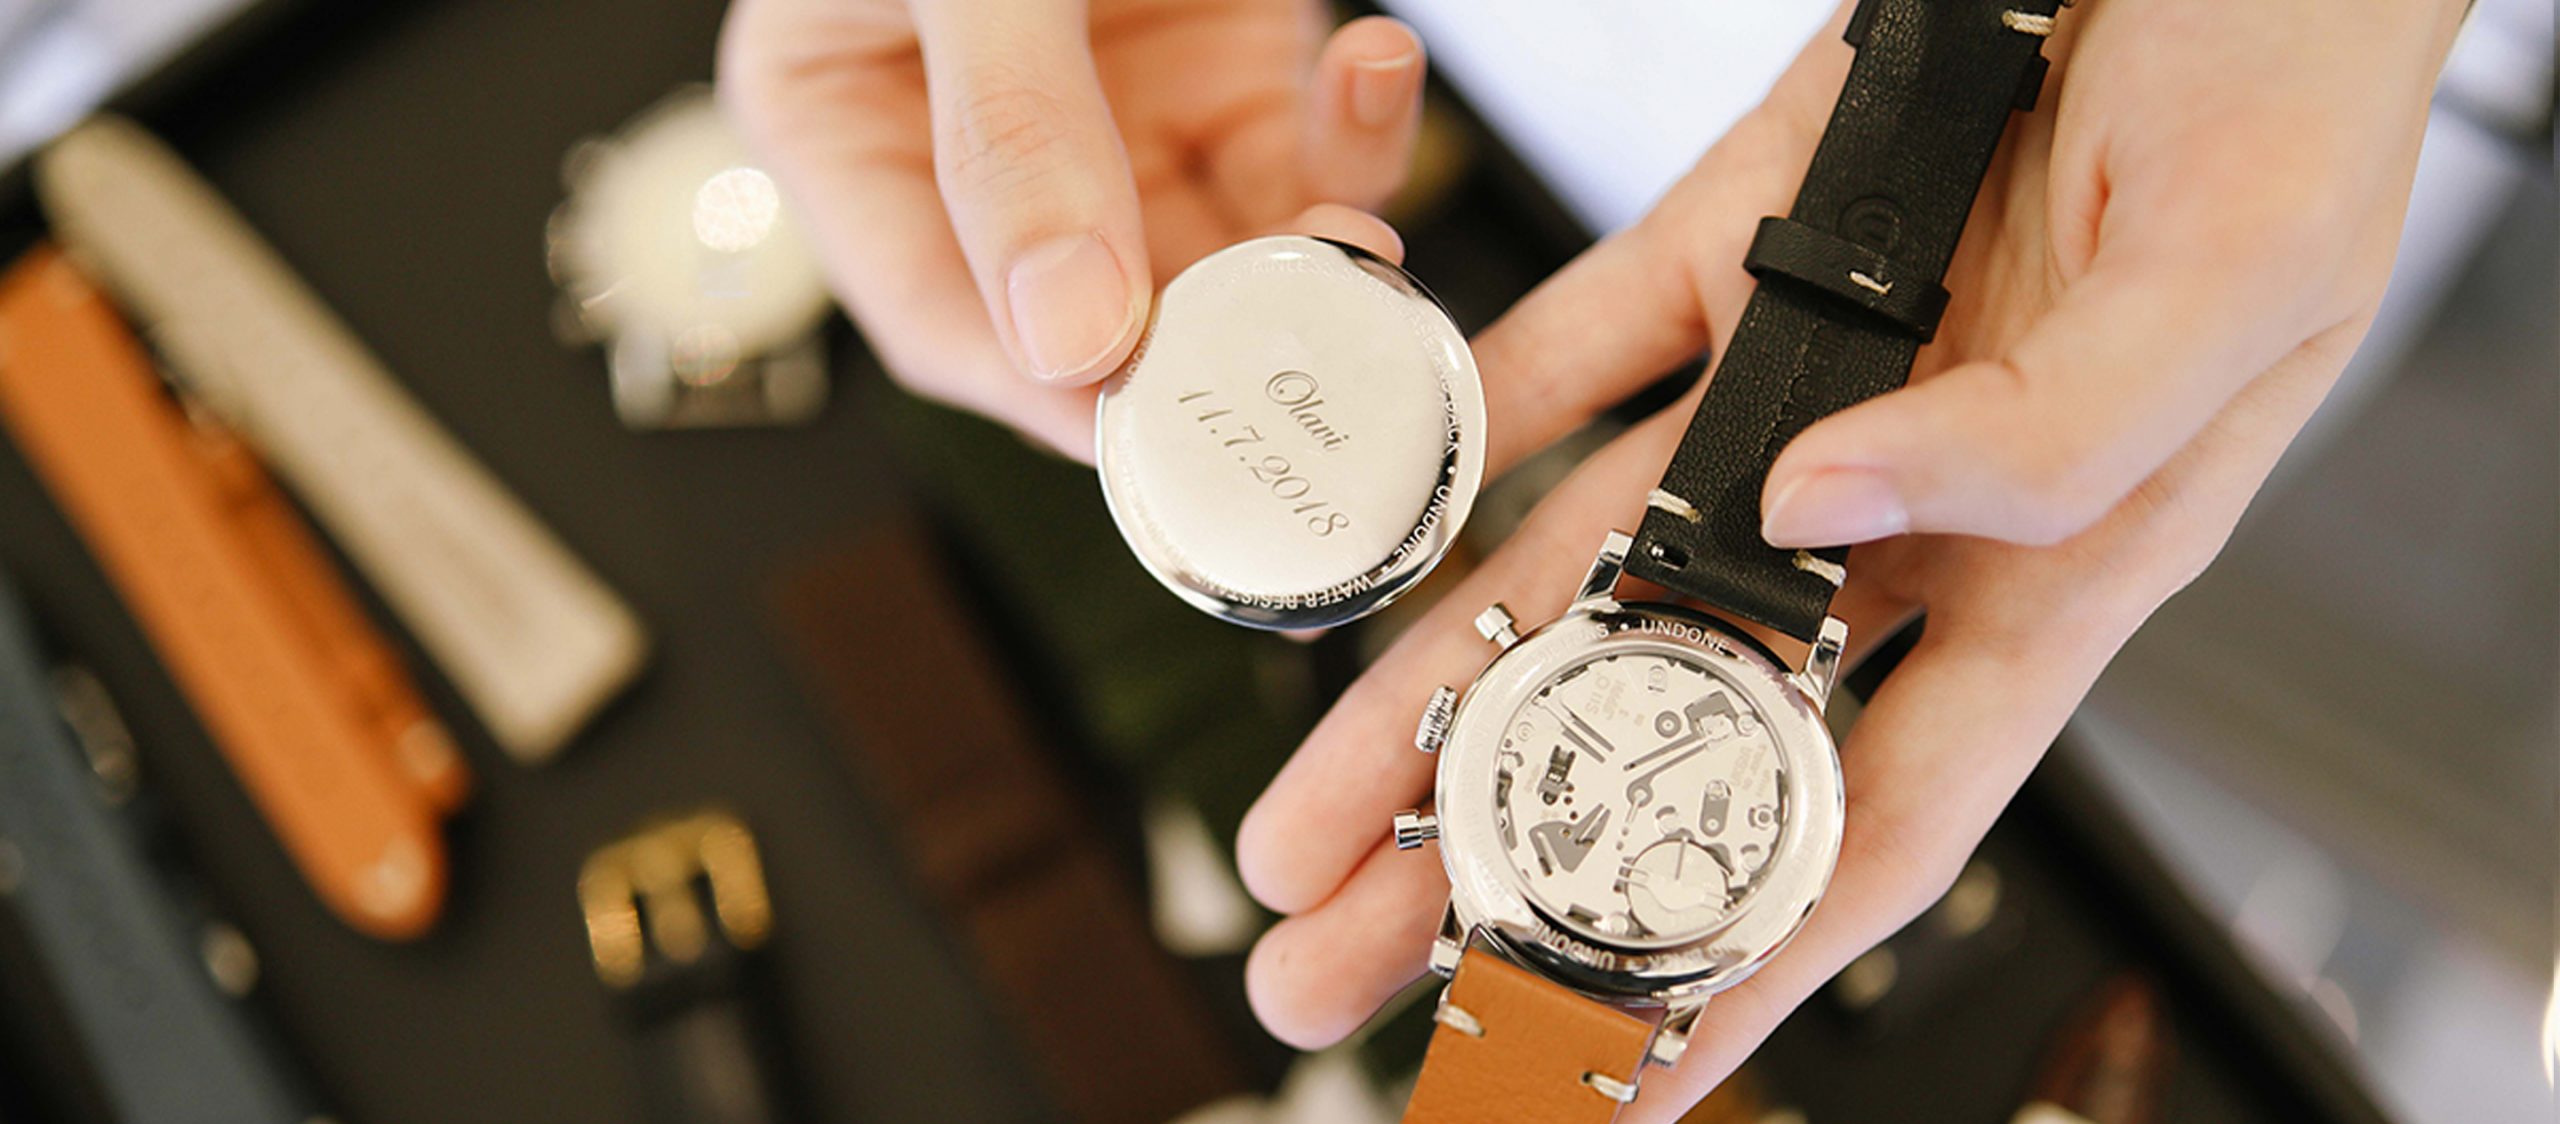 UNDONE : นาฬิกา custom ที่อยากให้คนใส่เป็นตัวเองได้มากที่สุด